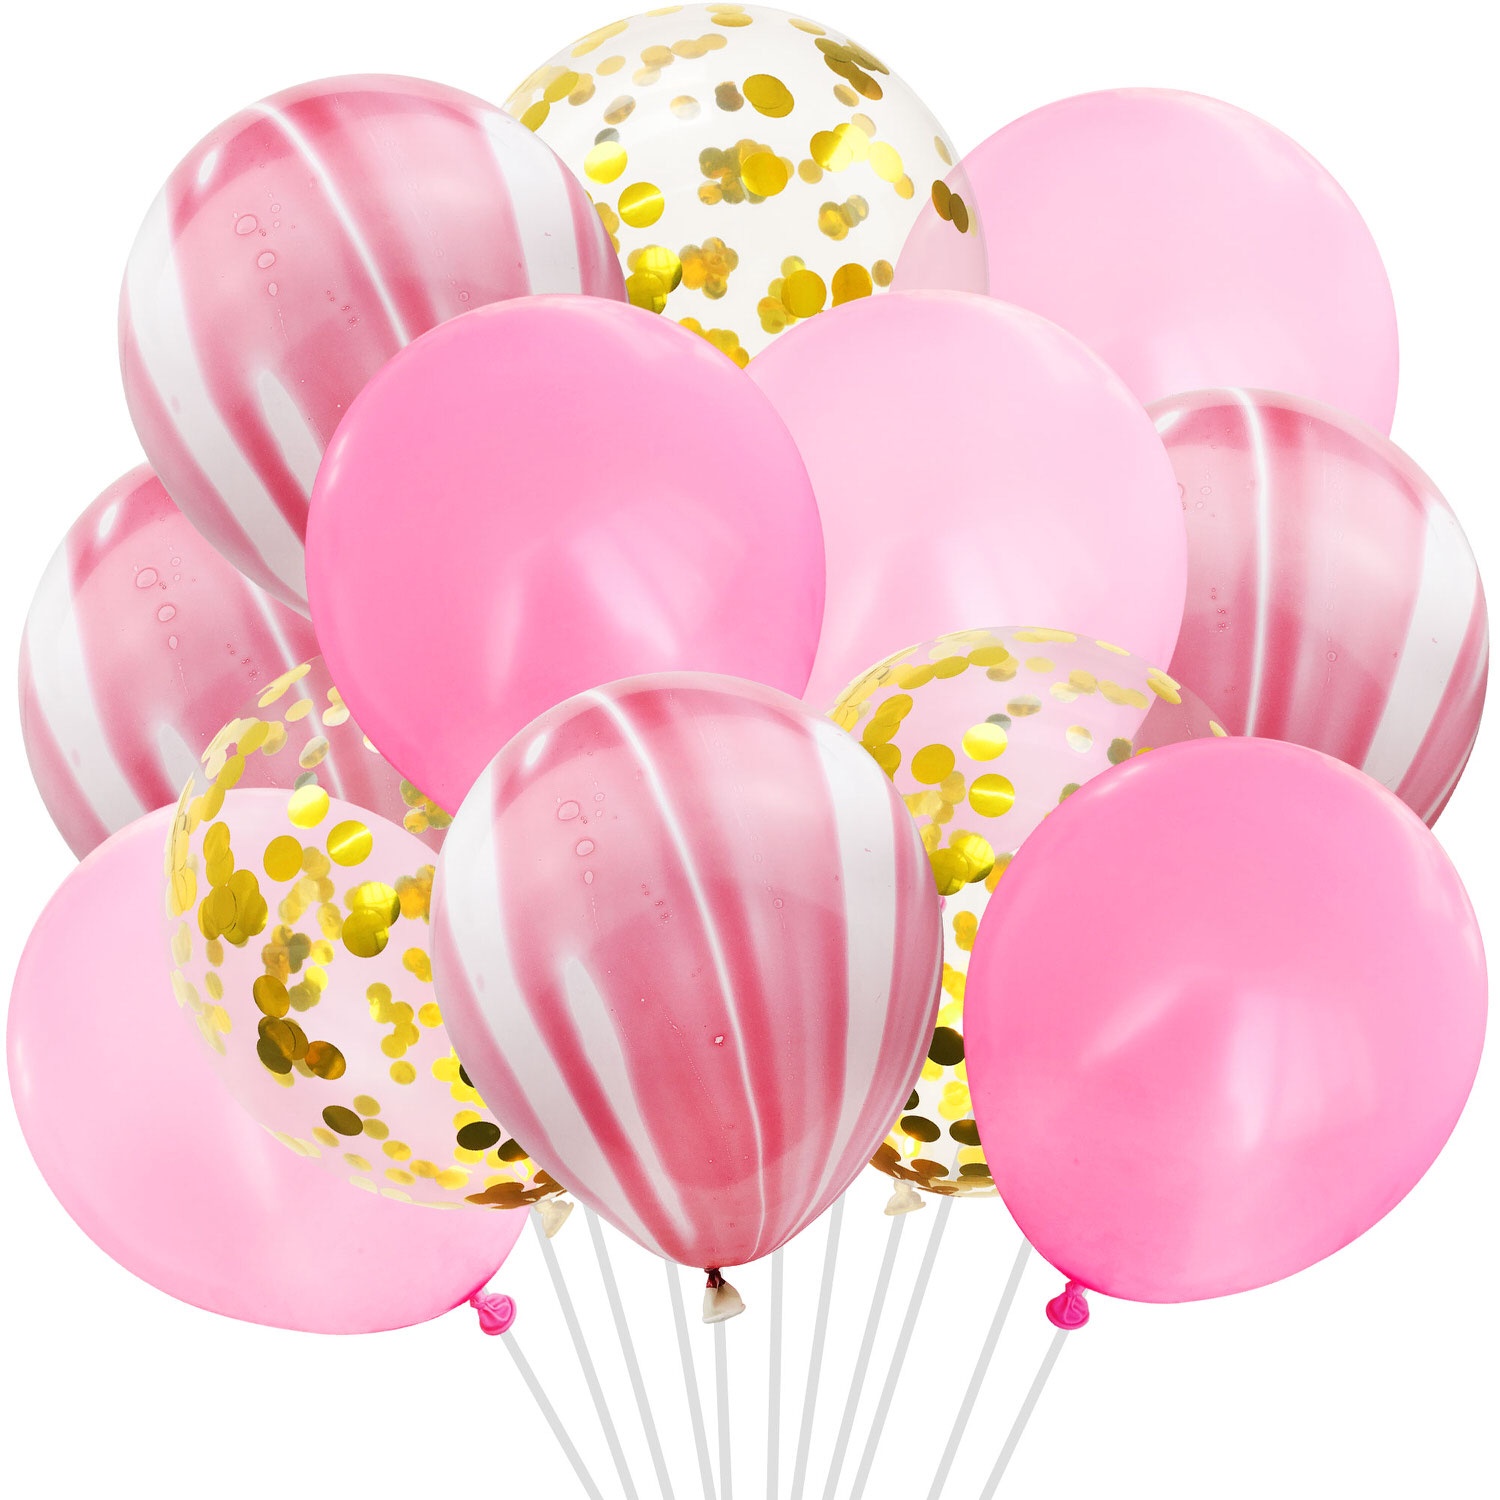 Konfetti Luftballon Set 12 Stk Deko Ballons für Geburtstag Party Hochzeit JGA Baby Shower rosa pink